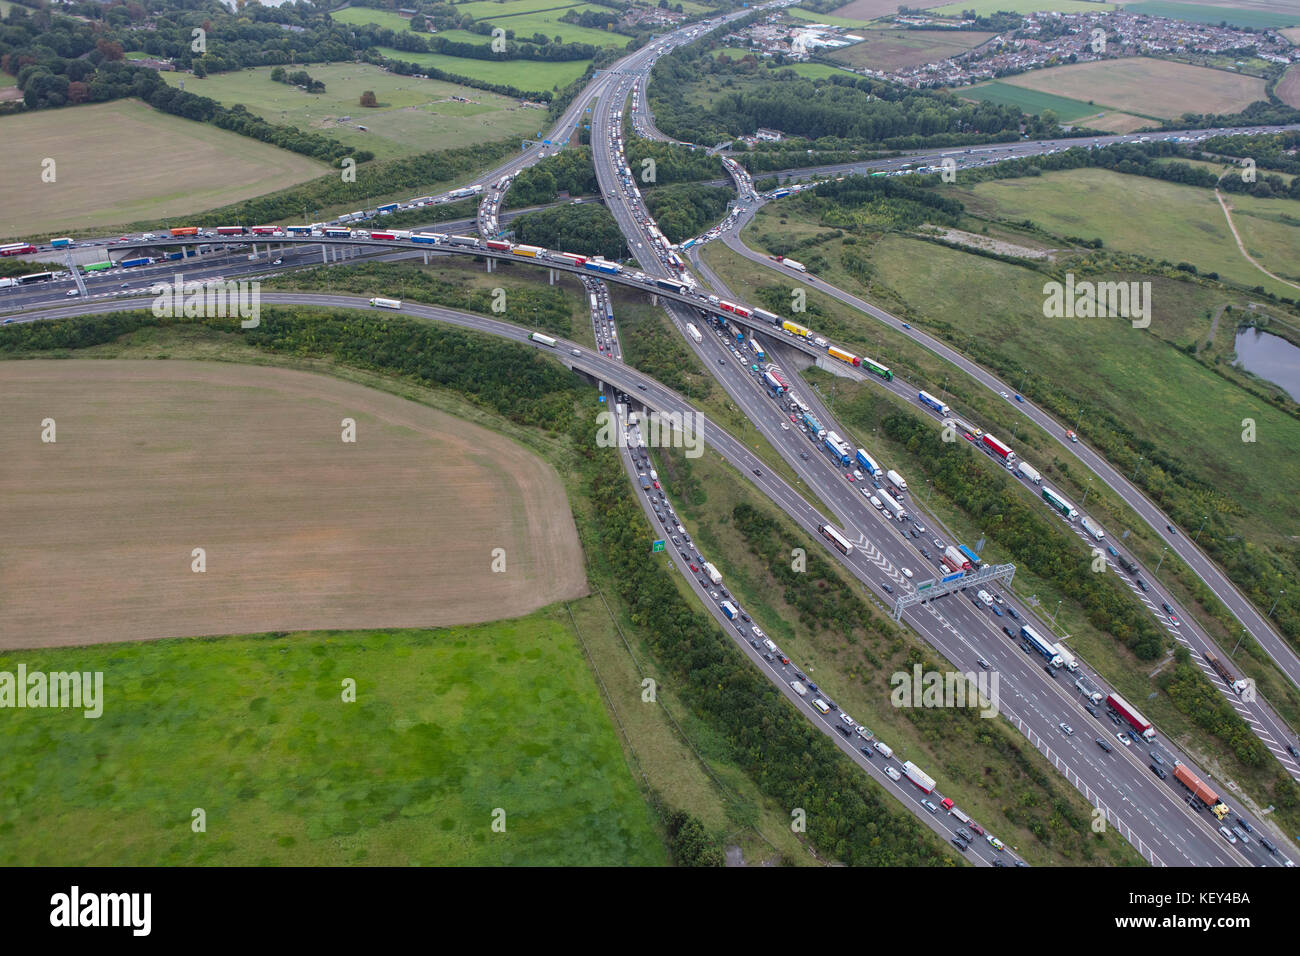 Una veduta aerea che mostra la congestione del traffico al bivio 2 della M25 London Orbital Foto Stock